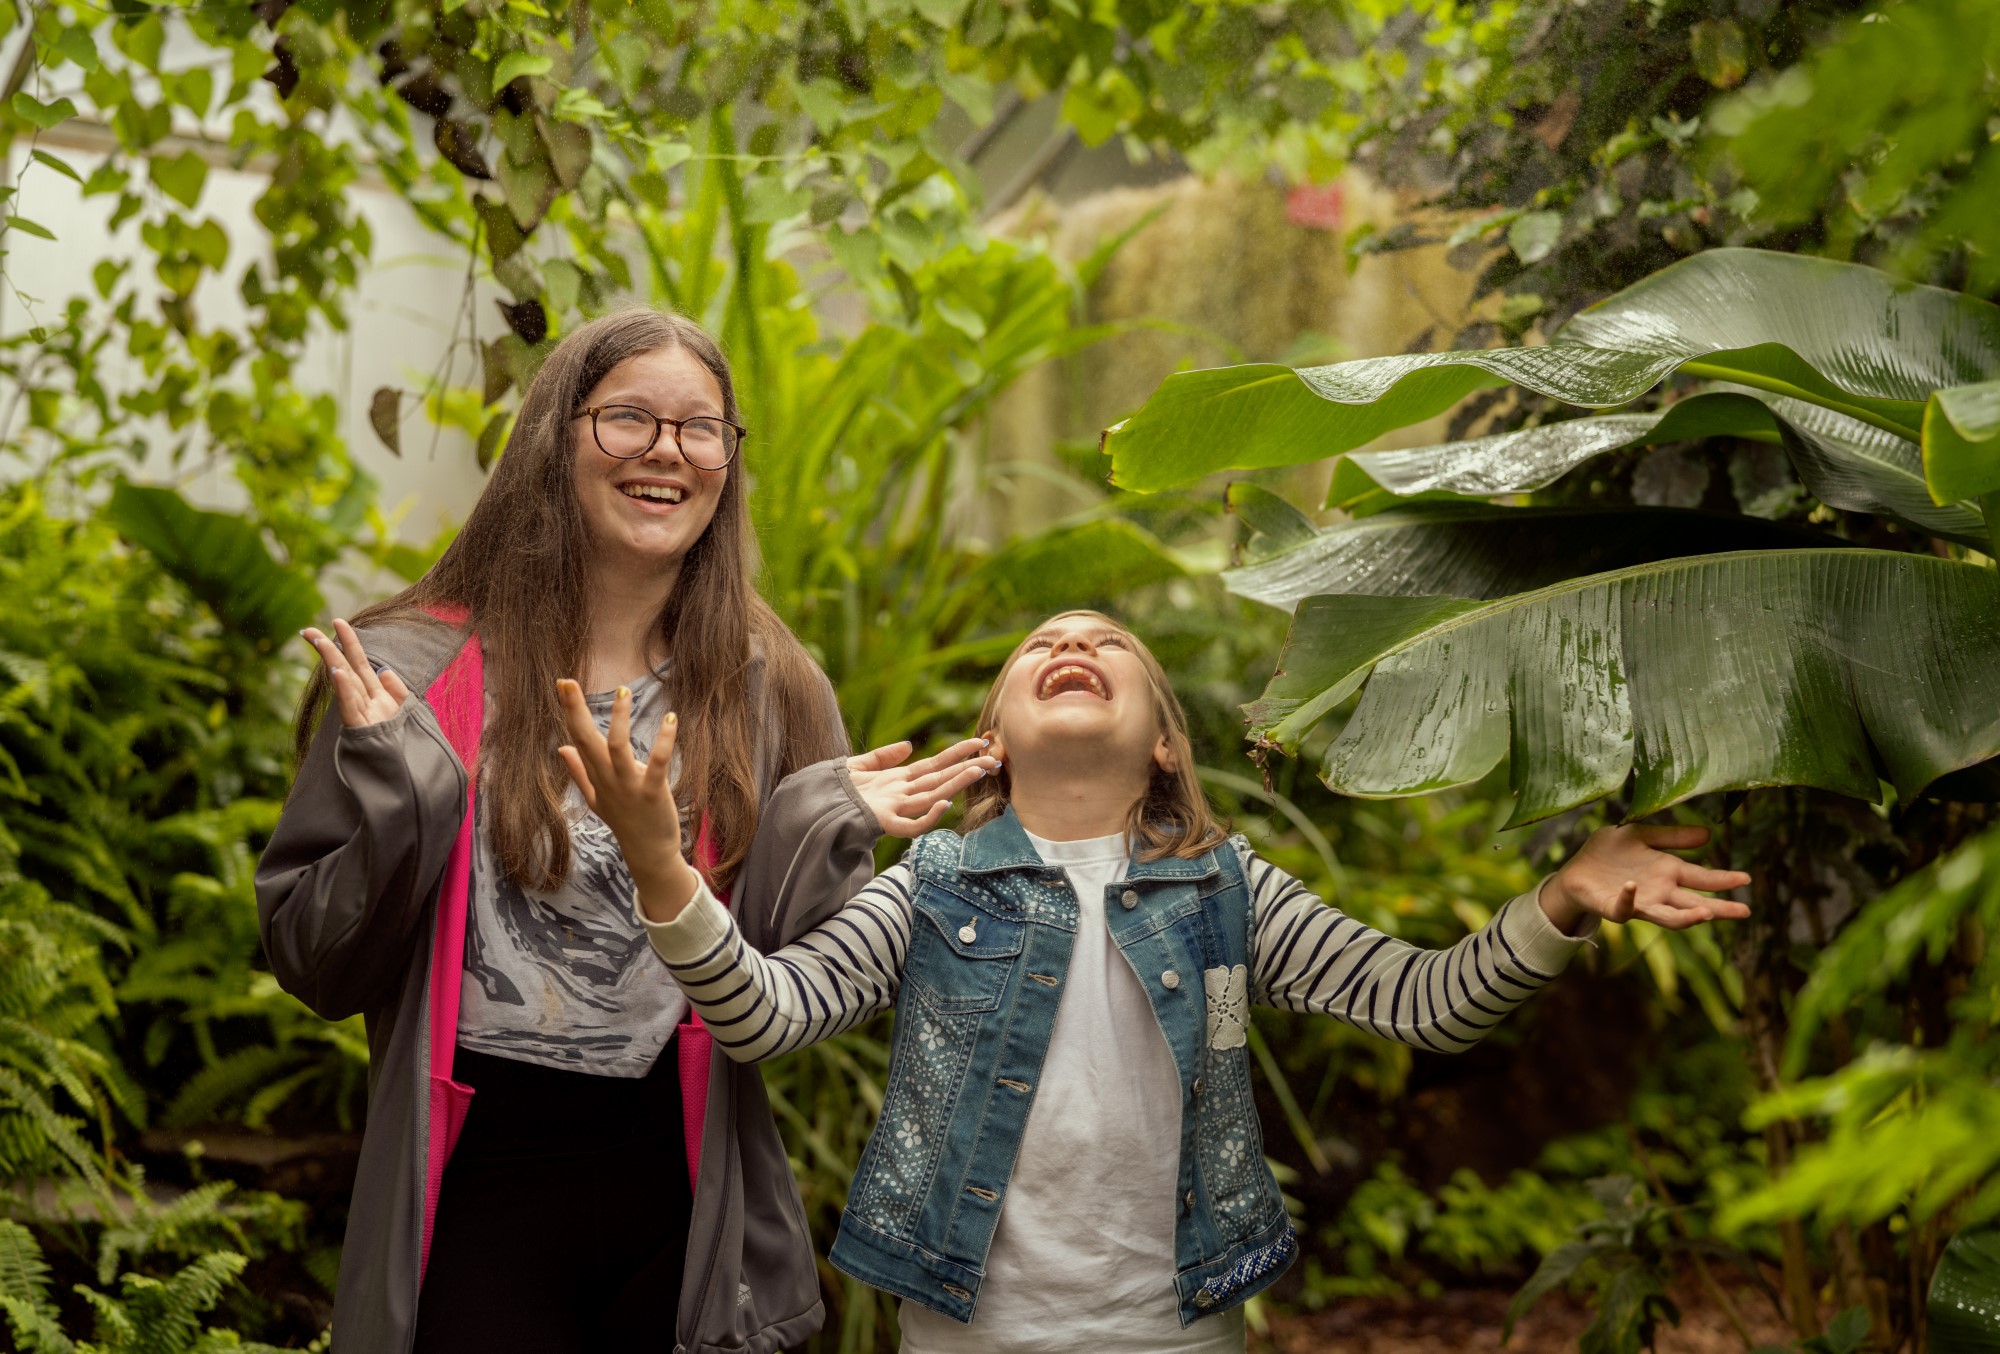 Two children enjoying the artificial rain in the Botanic Garden Greenhouse.